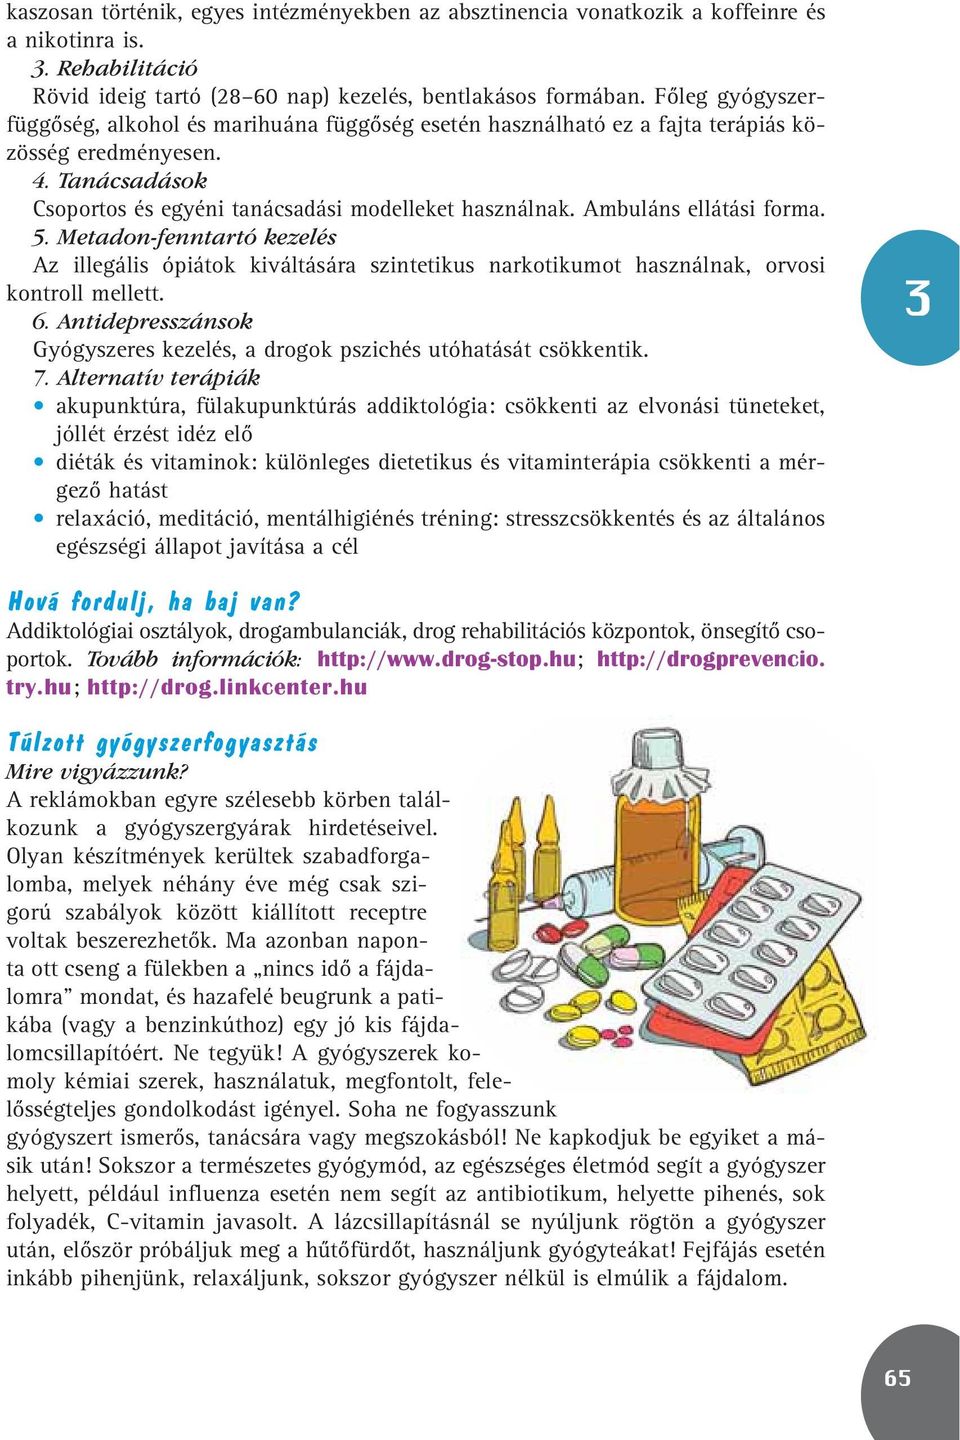 Ambuláns ellátási forma. 5. Metadon-fenntartó kezelés Az illegális ópiátok kiváltására szintetikus narkotikumot használnak, orvosi kontroll mellett. 6.